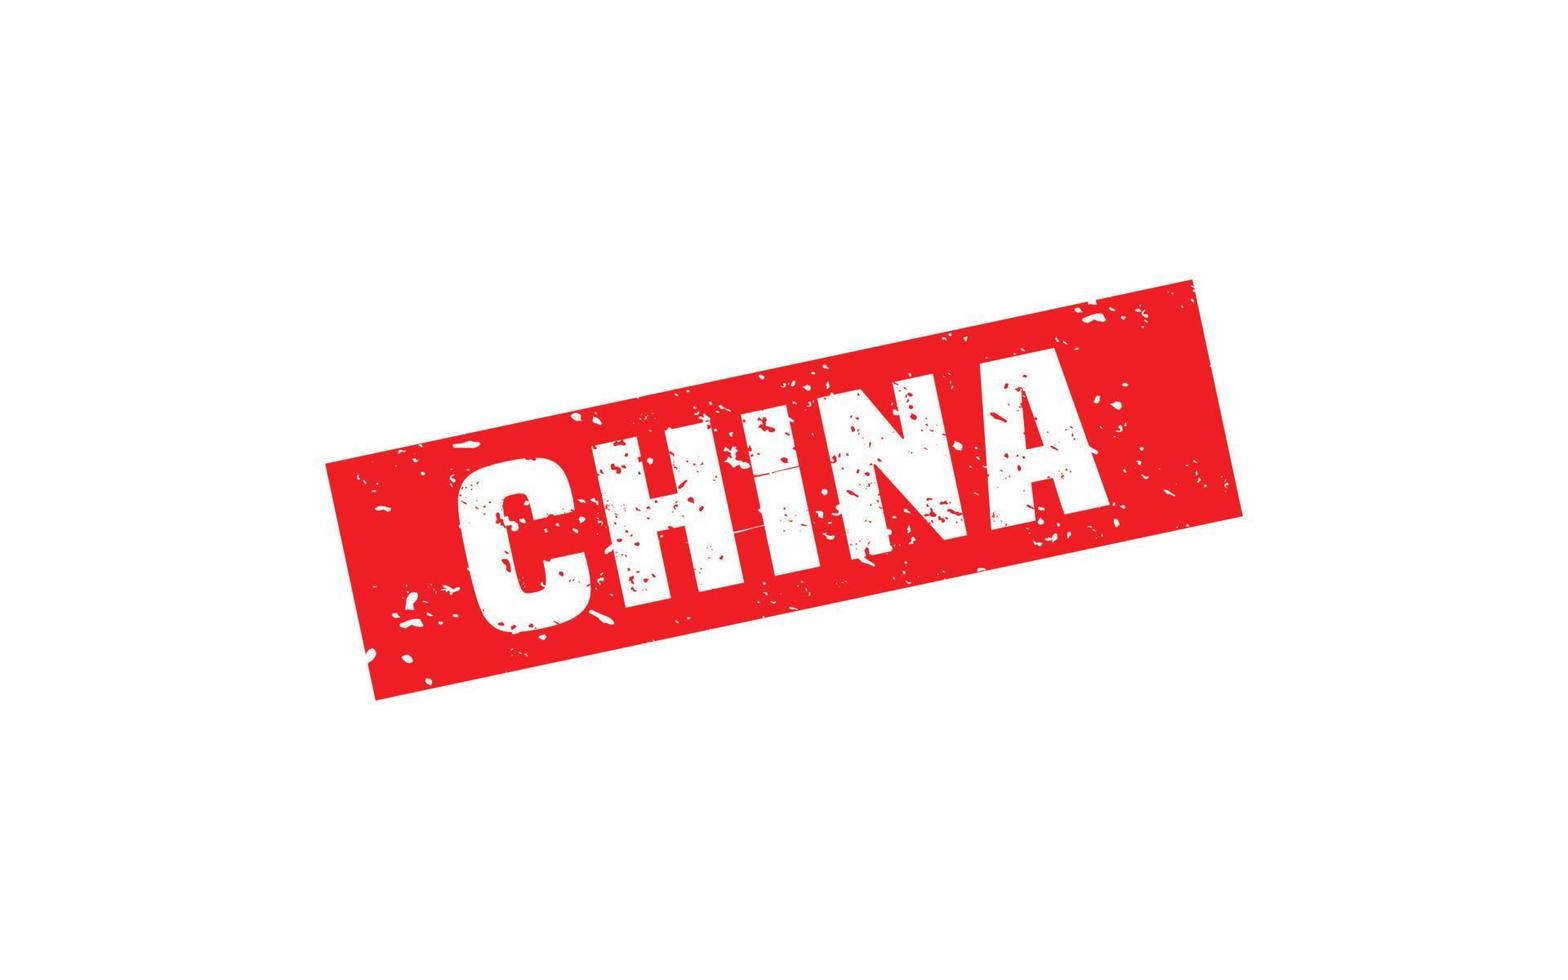 Cina francobollo gomma da cancellare con grunge stile su bianca sfondo vettore